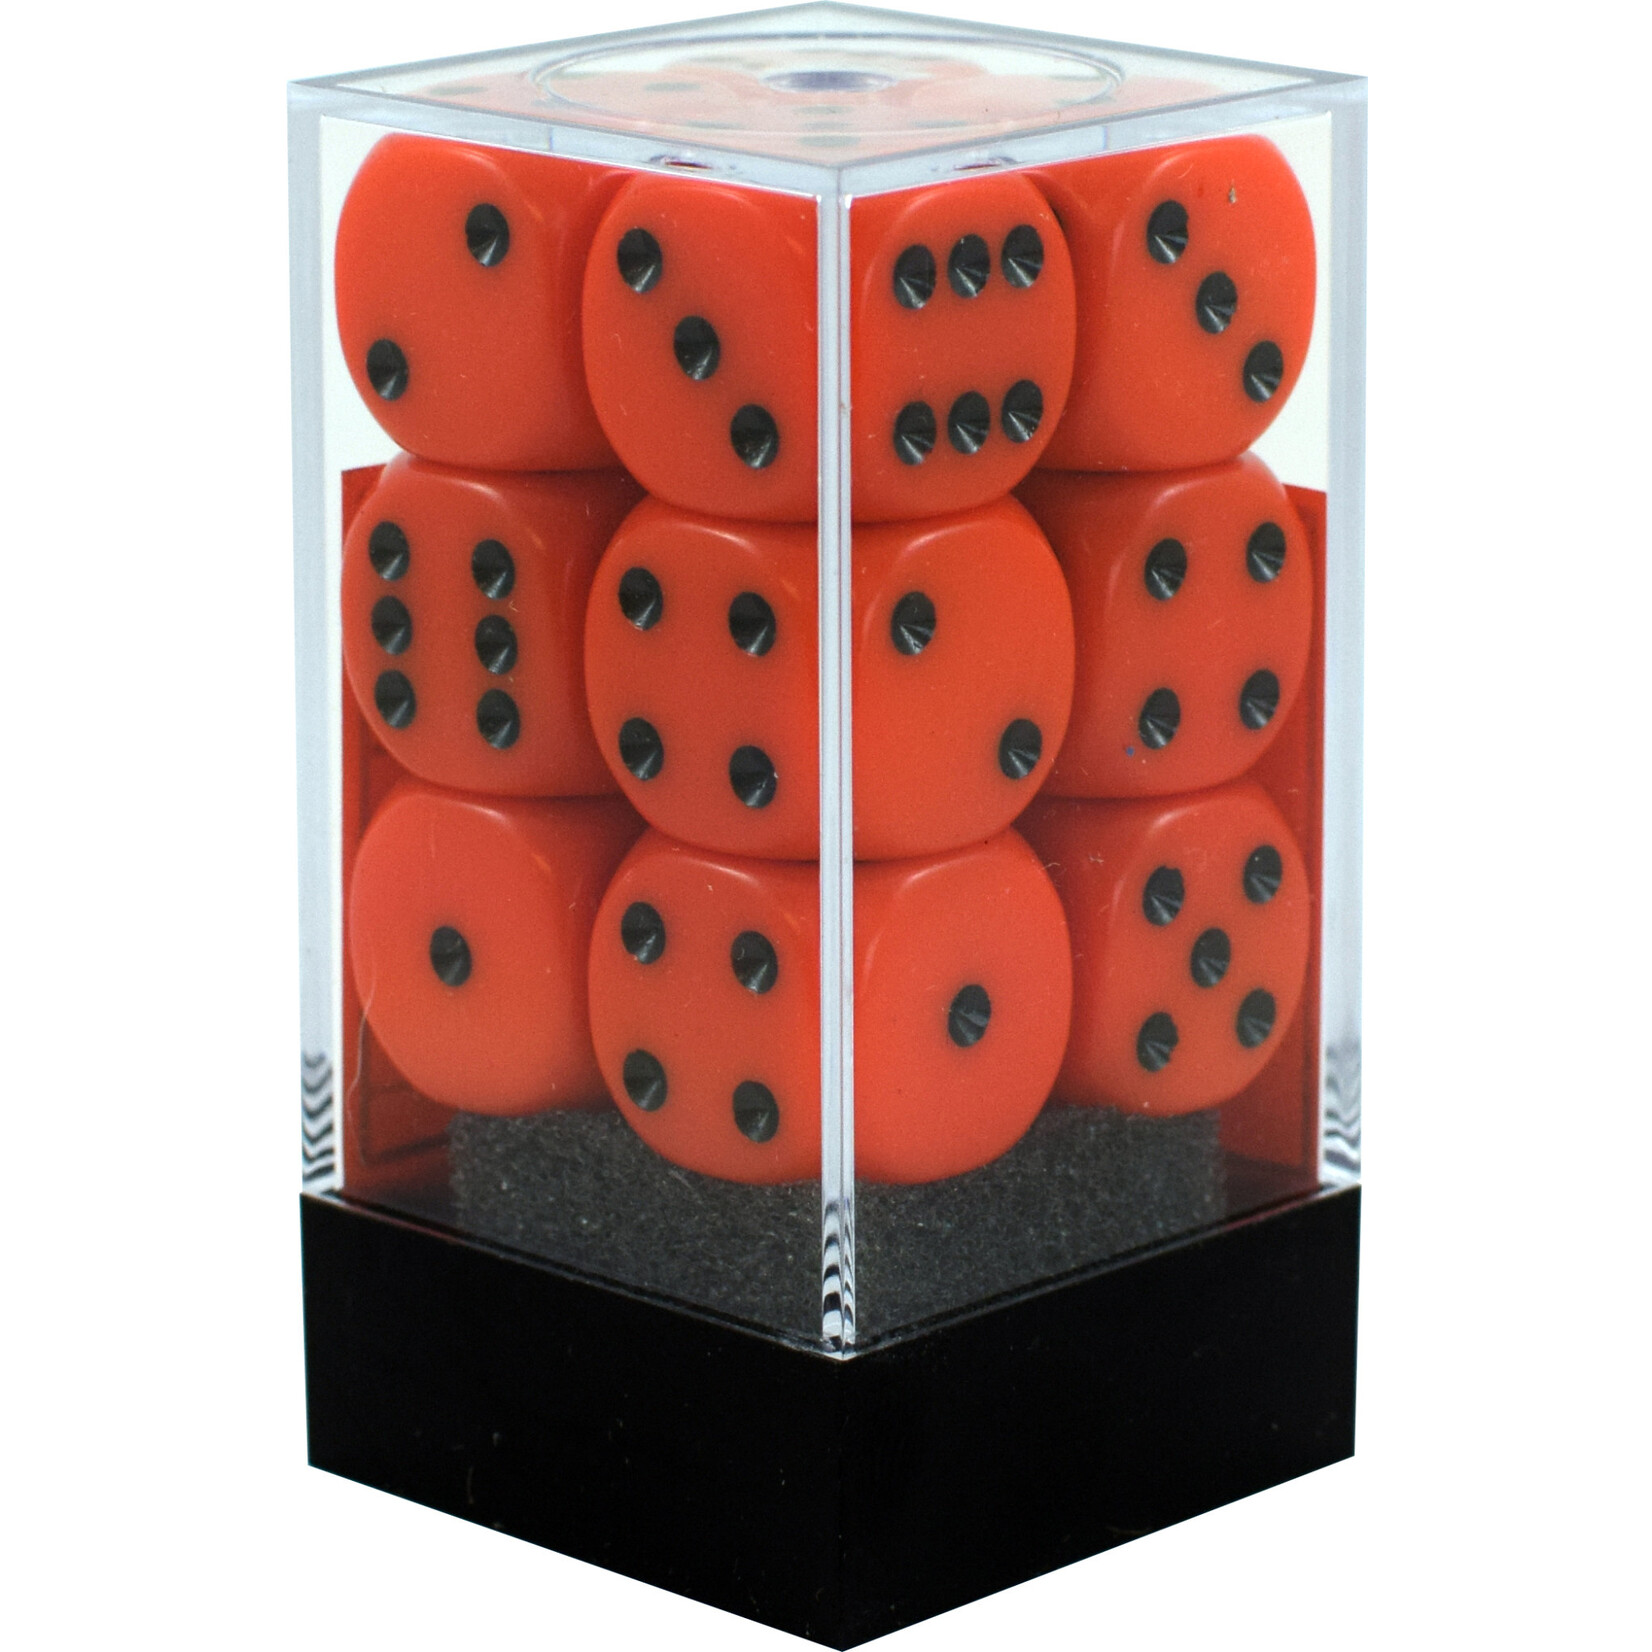 Chessex Opaque Orange/black 16mm d6 Dice Block (12 dice)